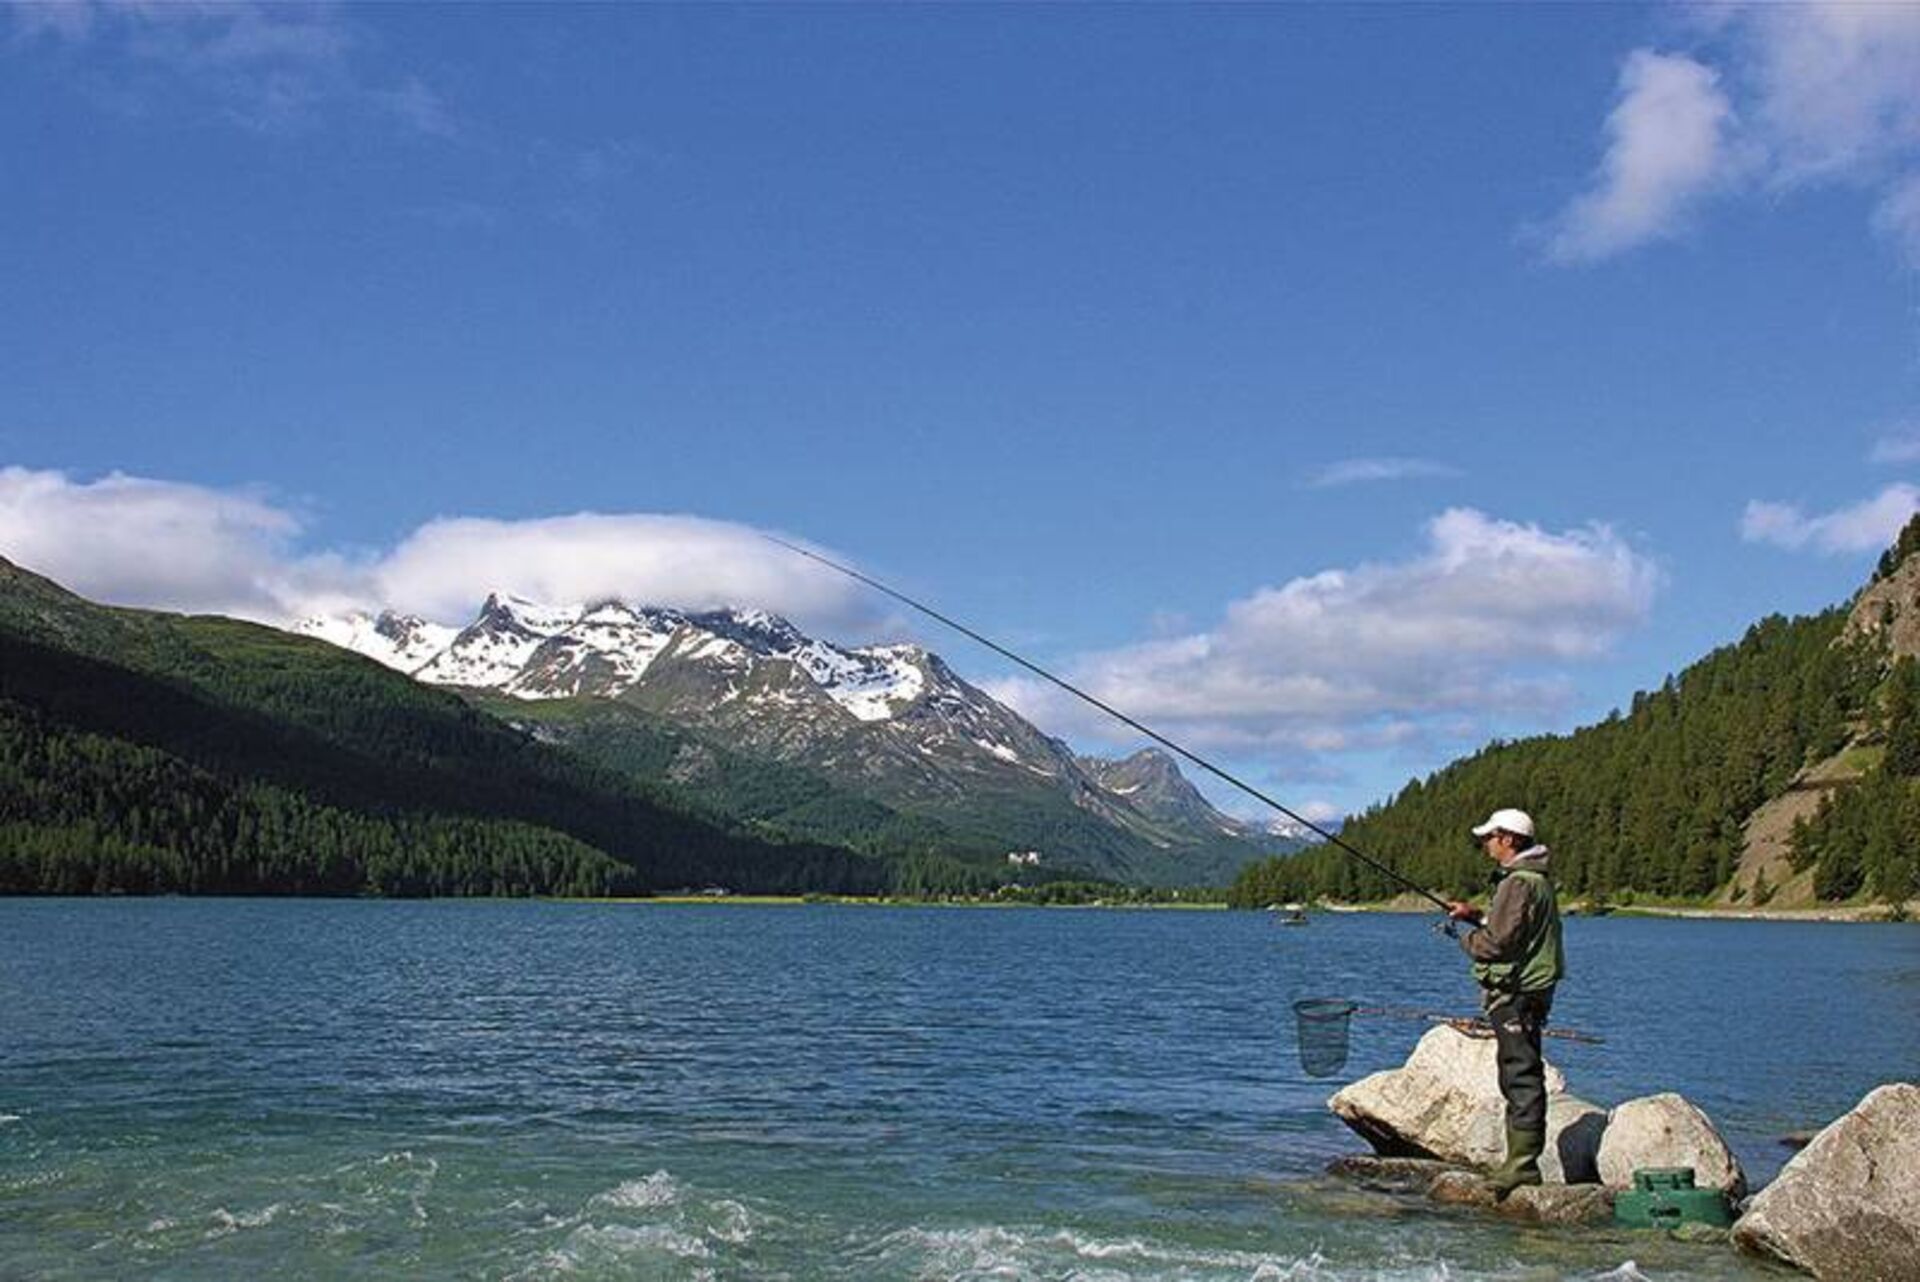  Darauf kann man sich als Bergsee­forellen­fischer definitiv freuen: Herrliche alpine Landschaften. Die Aussicht auf einen speziellen Fang macht das Erlebnis viel intensiver.  